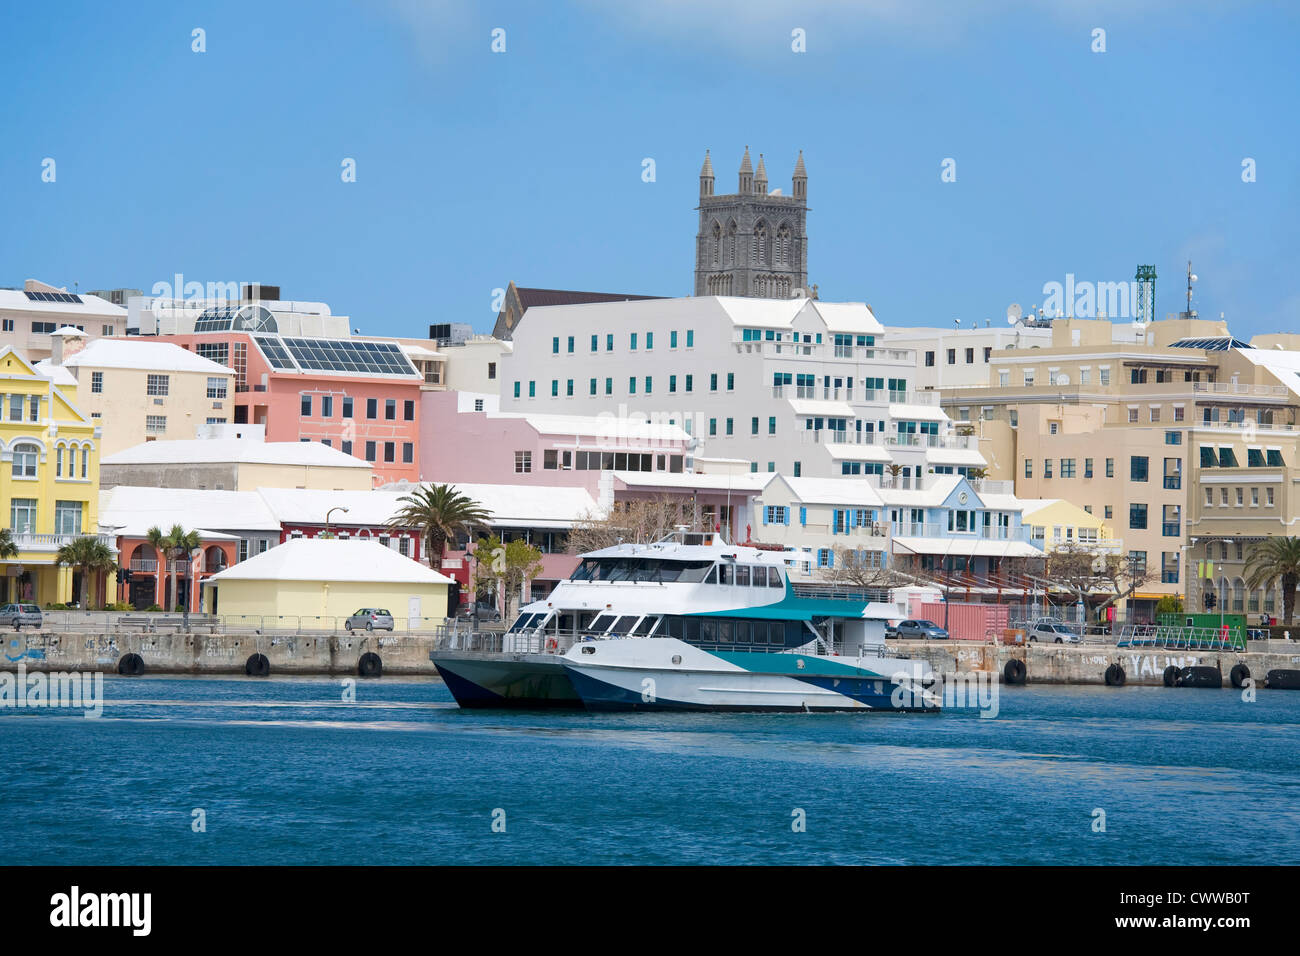 Un traghetto delle Bermuda in passato di crociera il lungomare nel centro cittadino di Hamilton, Bermuda. Foto Stock